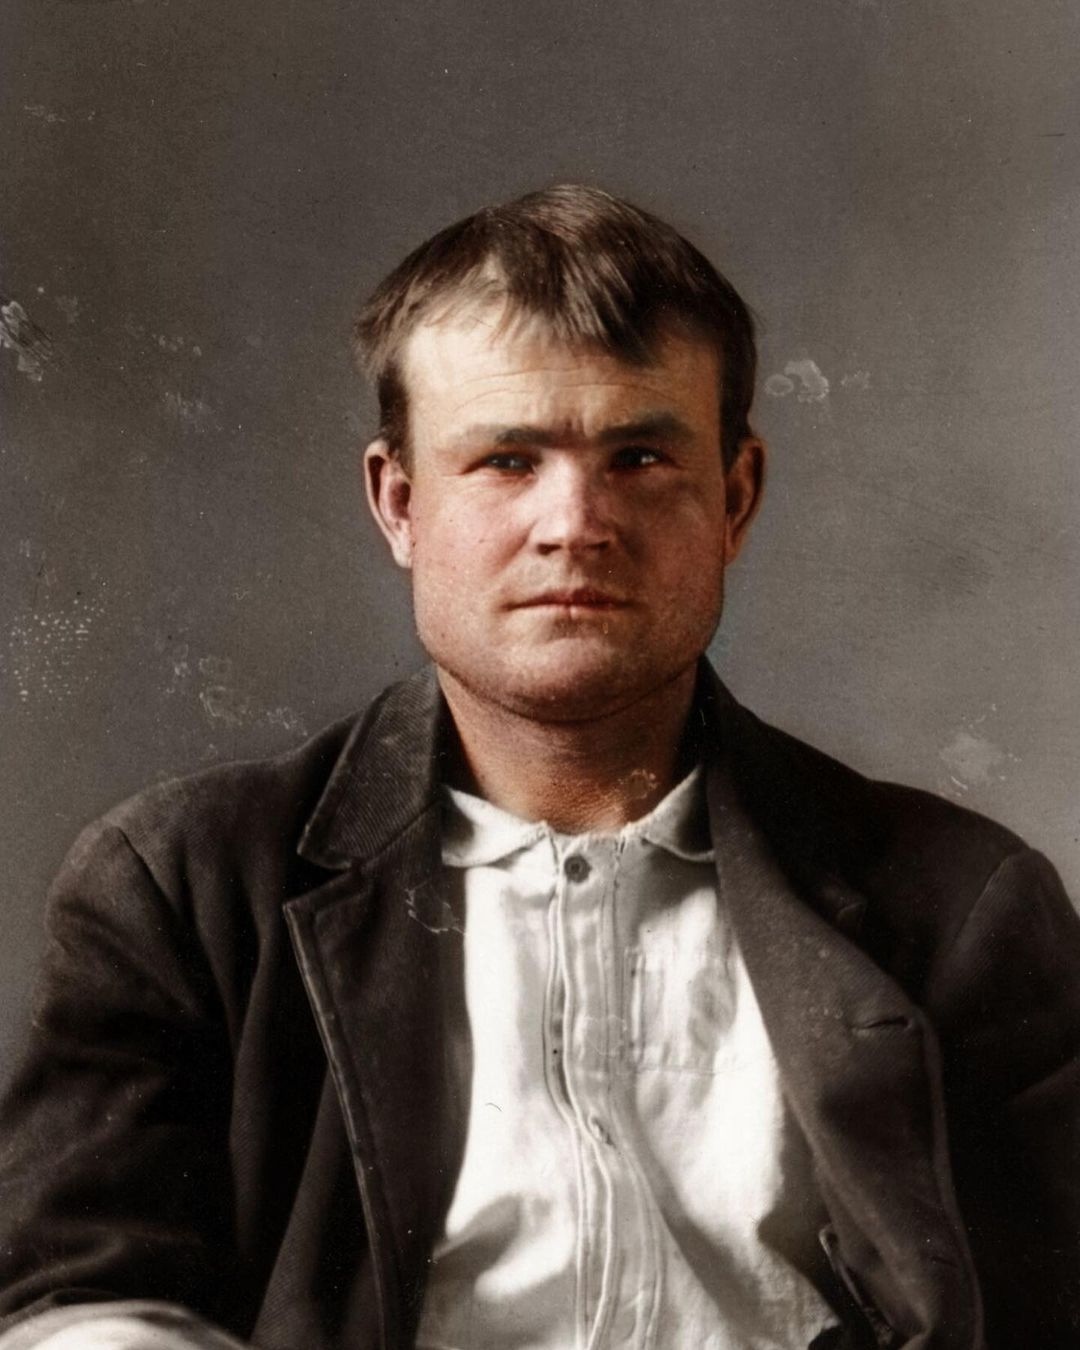 robert leroy parker, 28 ans, plus connu sous le nom de butch cassidy, photographié en 1894.